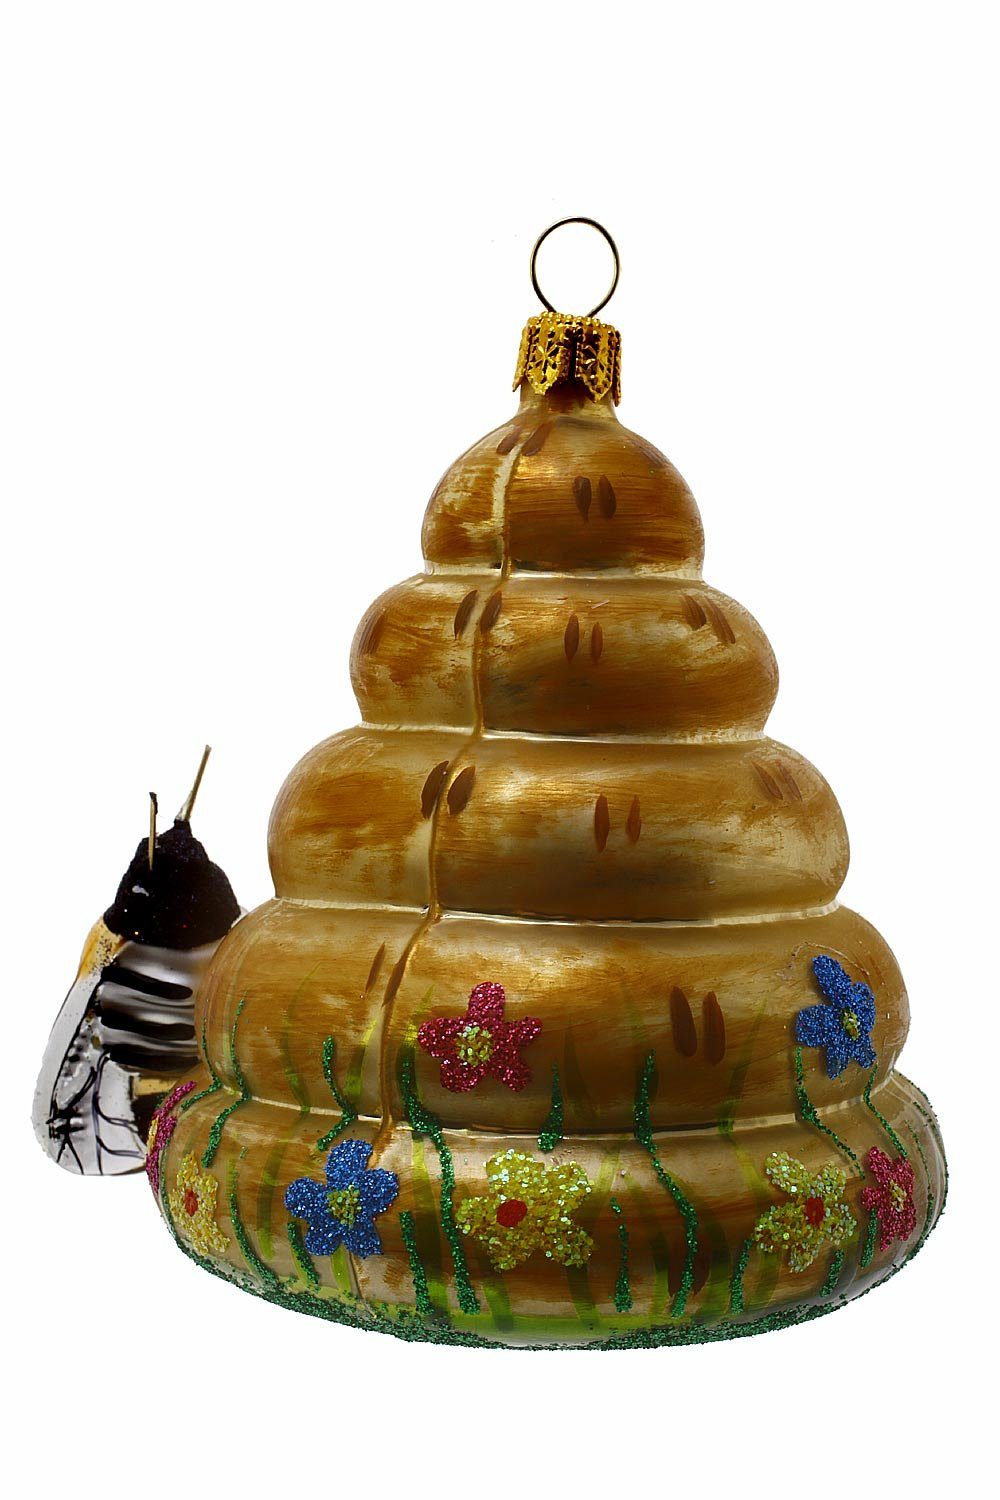 mundgeblasen - Dekohänger Weihnachtskontor Hamburger Bienenkorb, Christbaumschmuck - handdekoriert